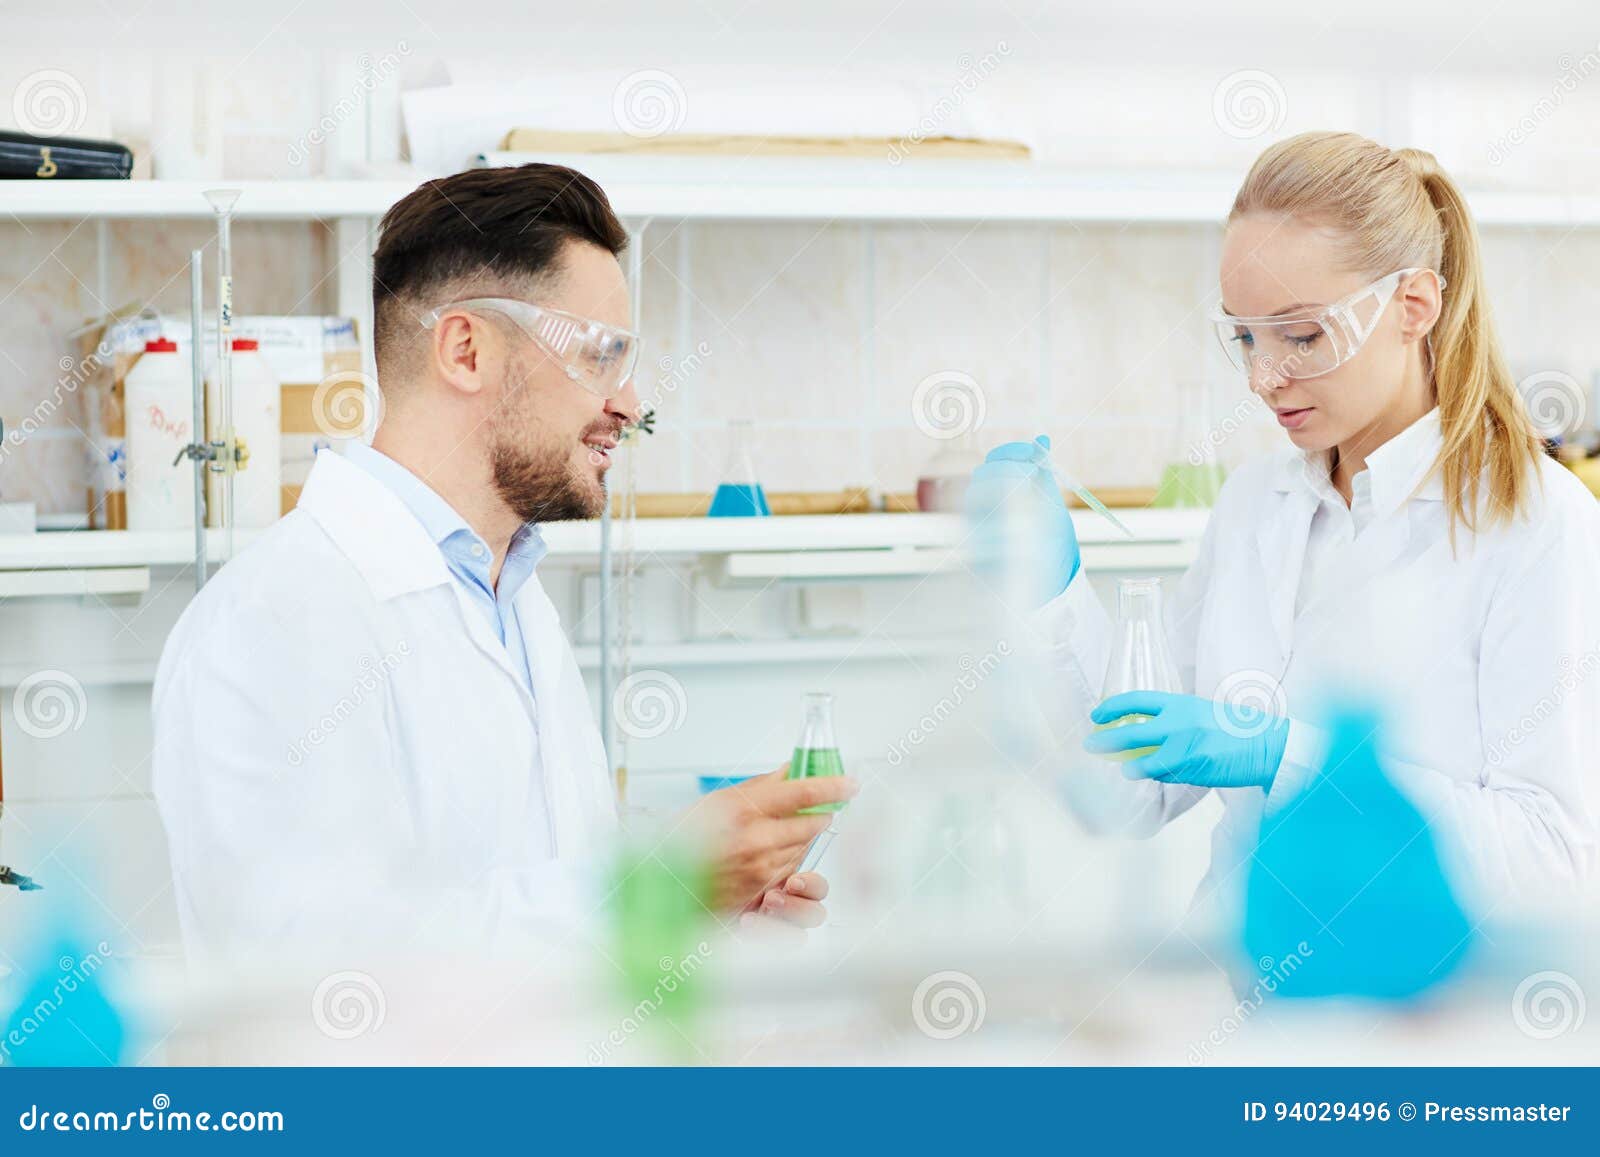 Исследовательские группы россия. Исследовательская группа. Мужчина перед современной лабораторией. Блондинка и мужчина-ученый. 2 Мужчин учёных.